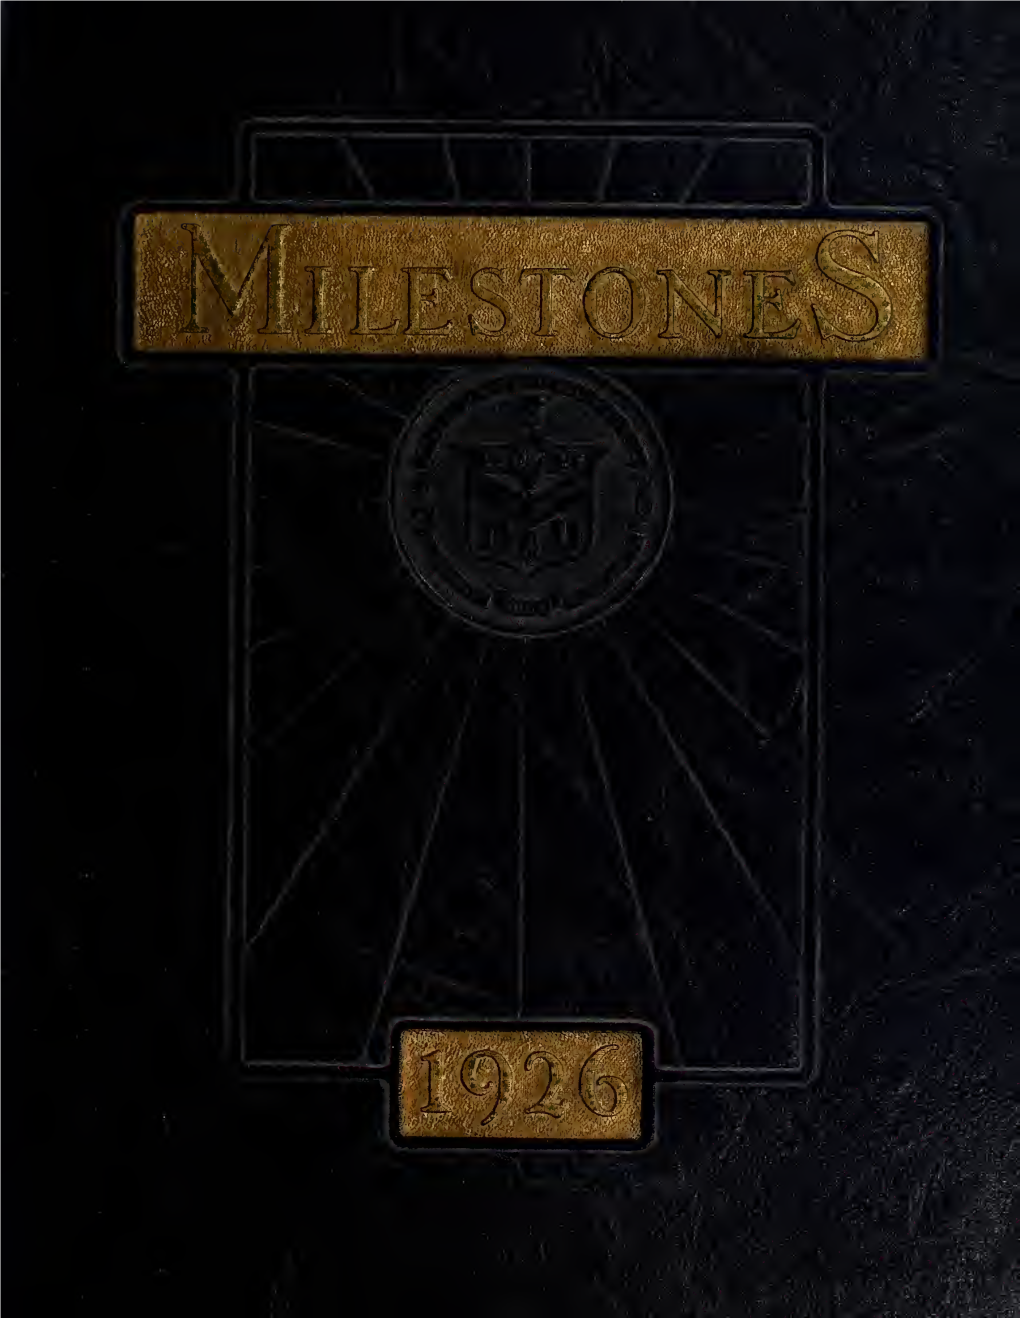 Milestones 1926